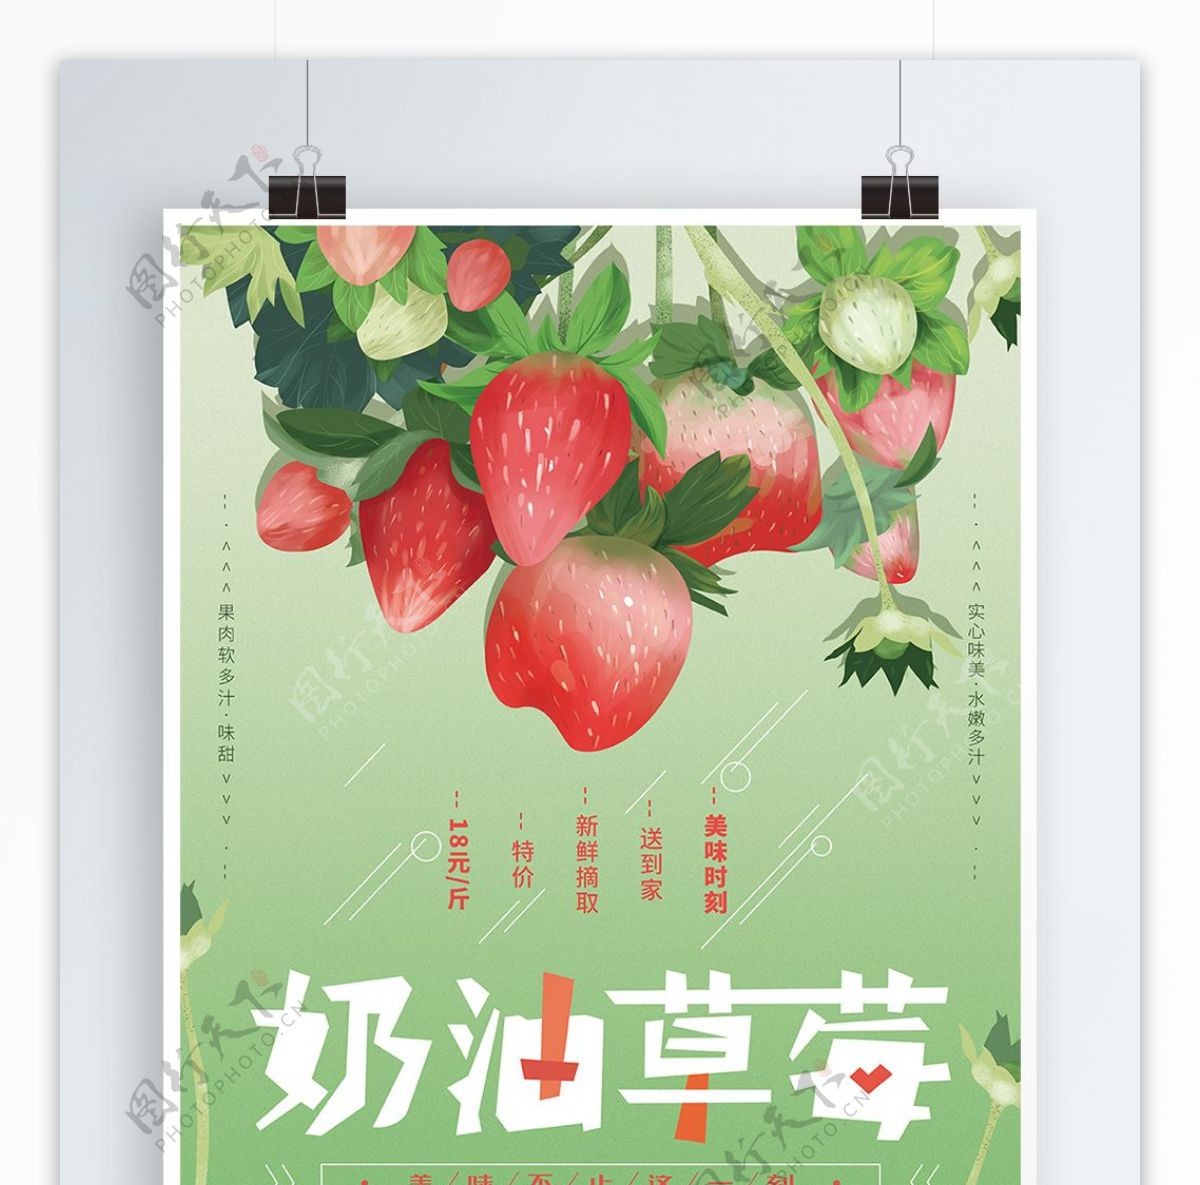 原创手绘清新草莓水果海报